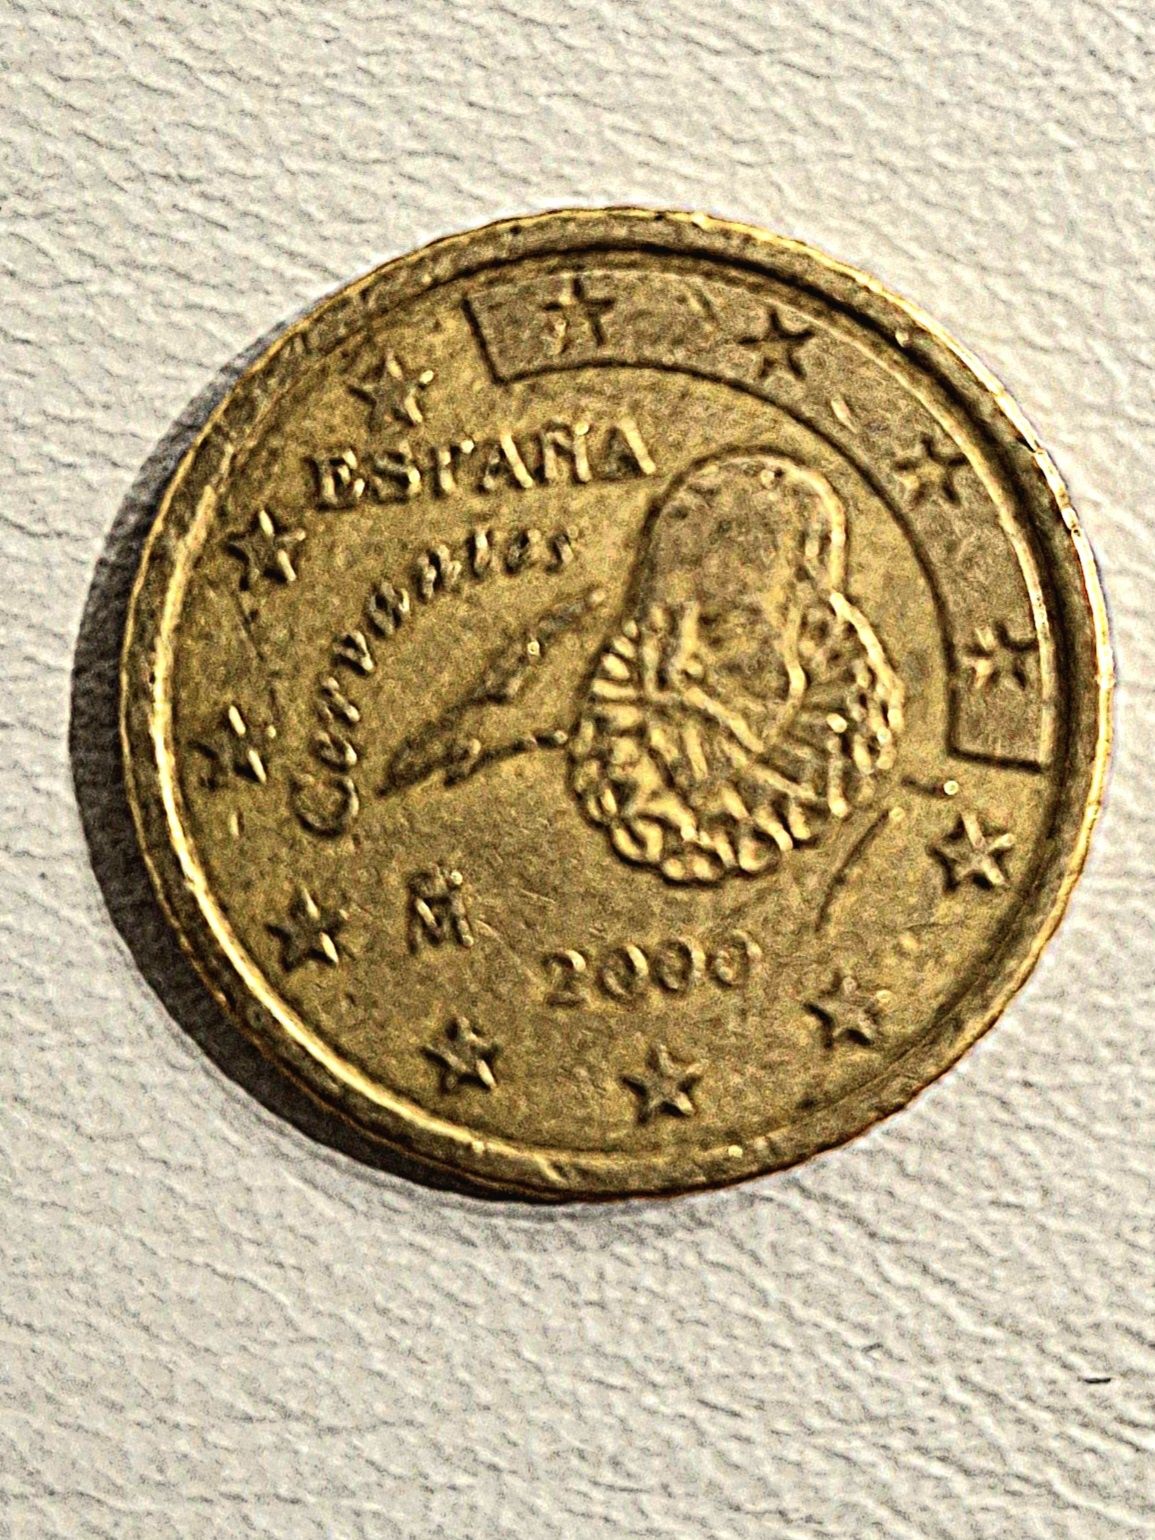 50 cent Cervantes Espana 2000